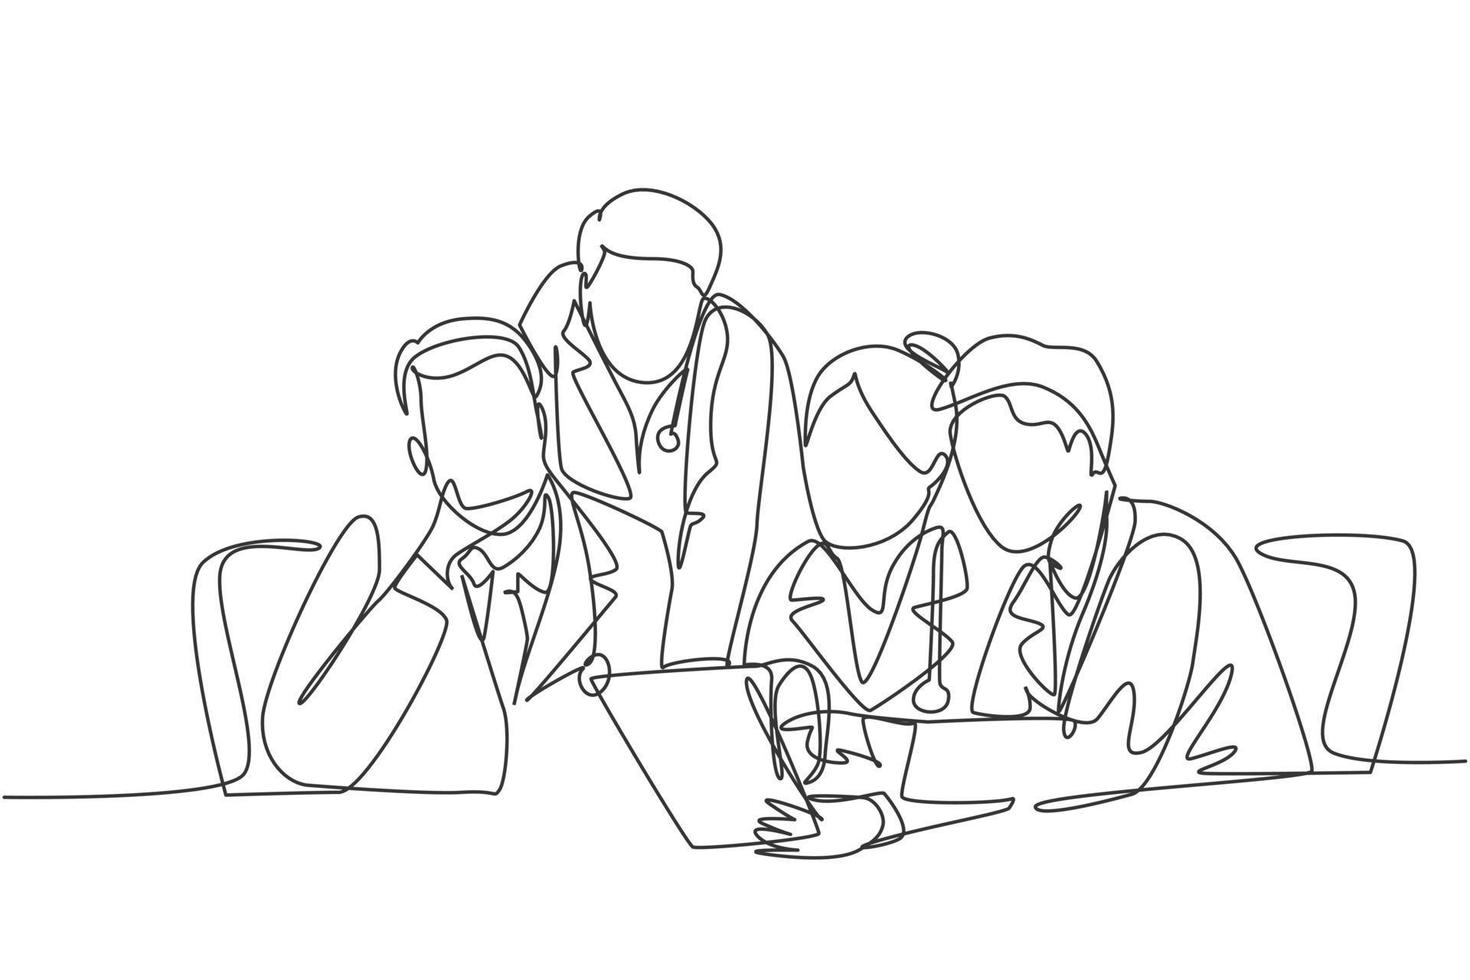 un gruppo di disegno a linea singola continuo di medici maschi e femmine che discutono e diagnosticano la malattia del paziente nella stanza d'ospedale. concetto di riunione medica illustrazione vettoriale di disegno di disegno a linea singola